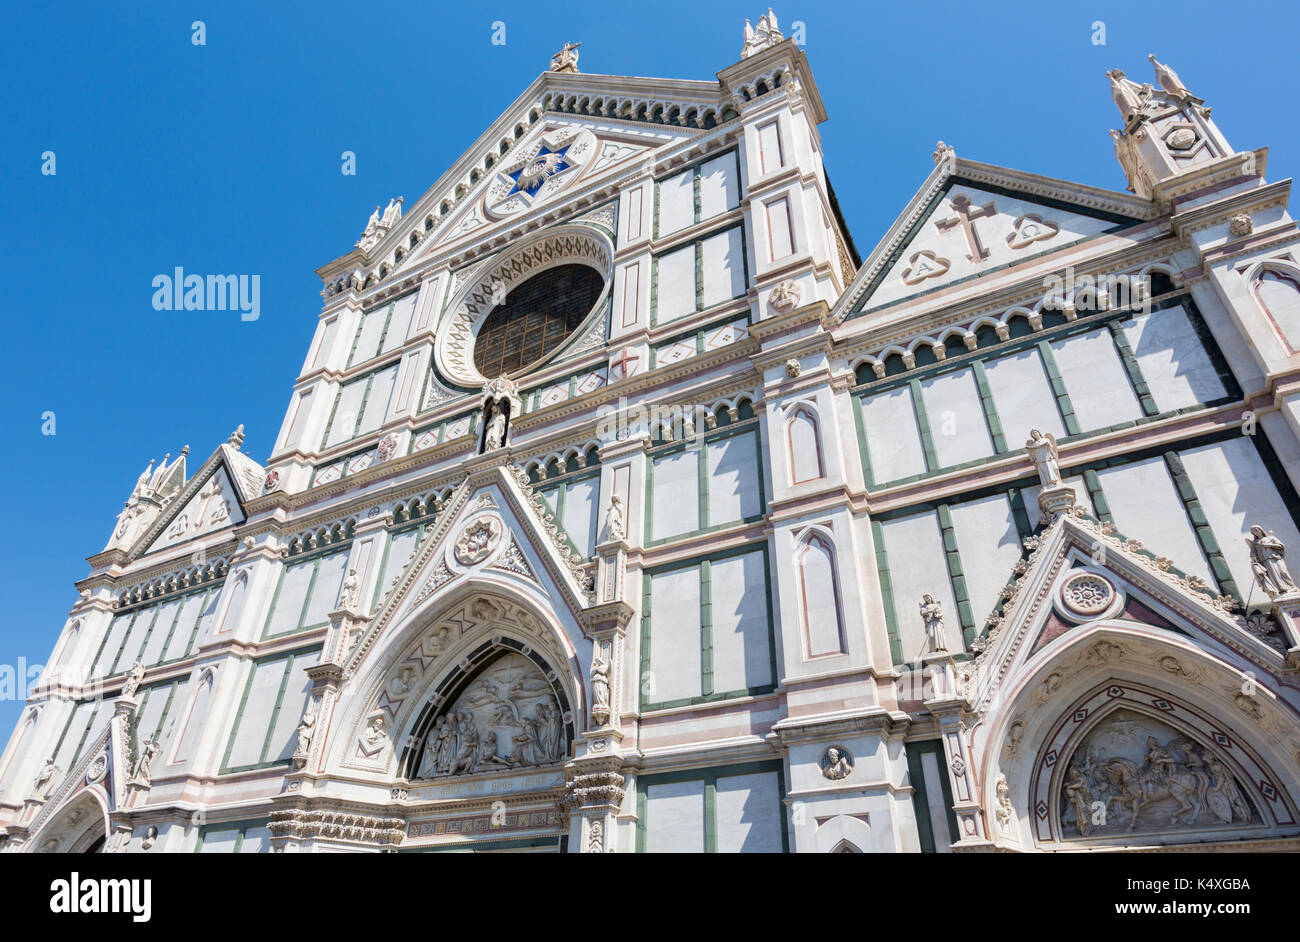 La province de Florence, florence, toscane, italie. église de Santa Croce. Le centre historique de Florence est un unesco world heritage site. Banque D'Images